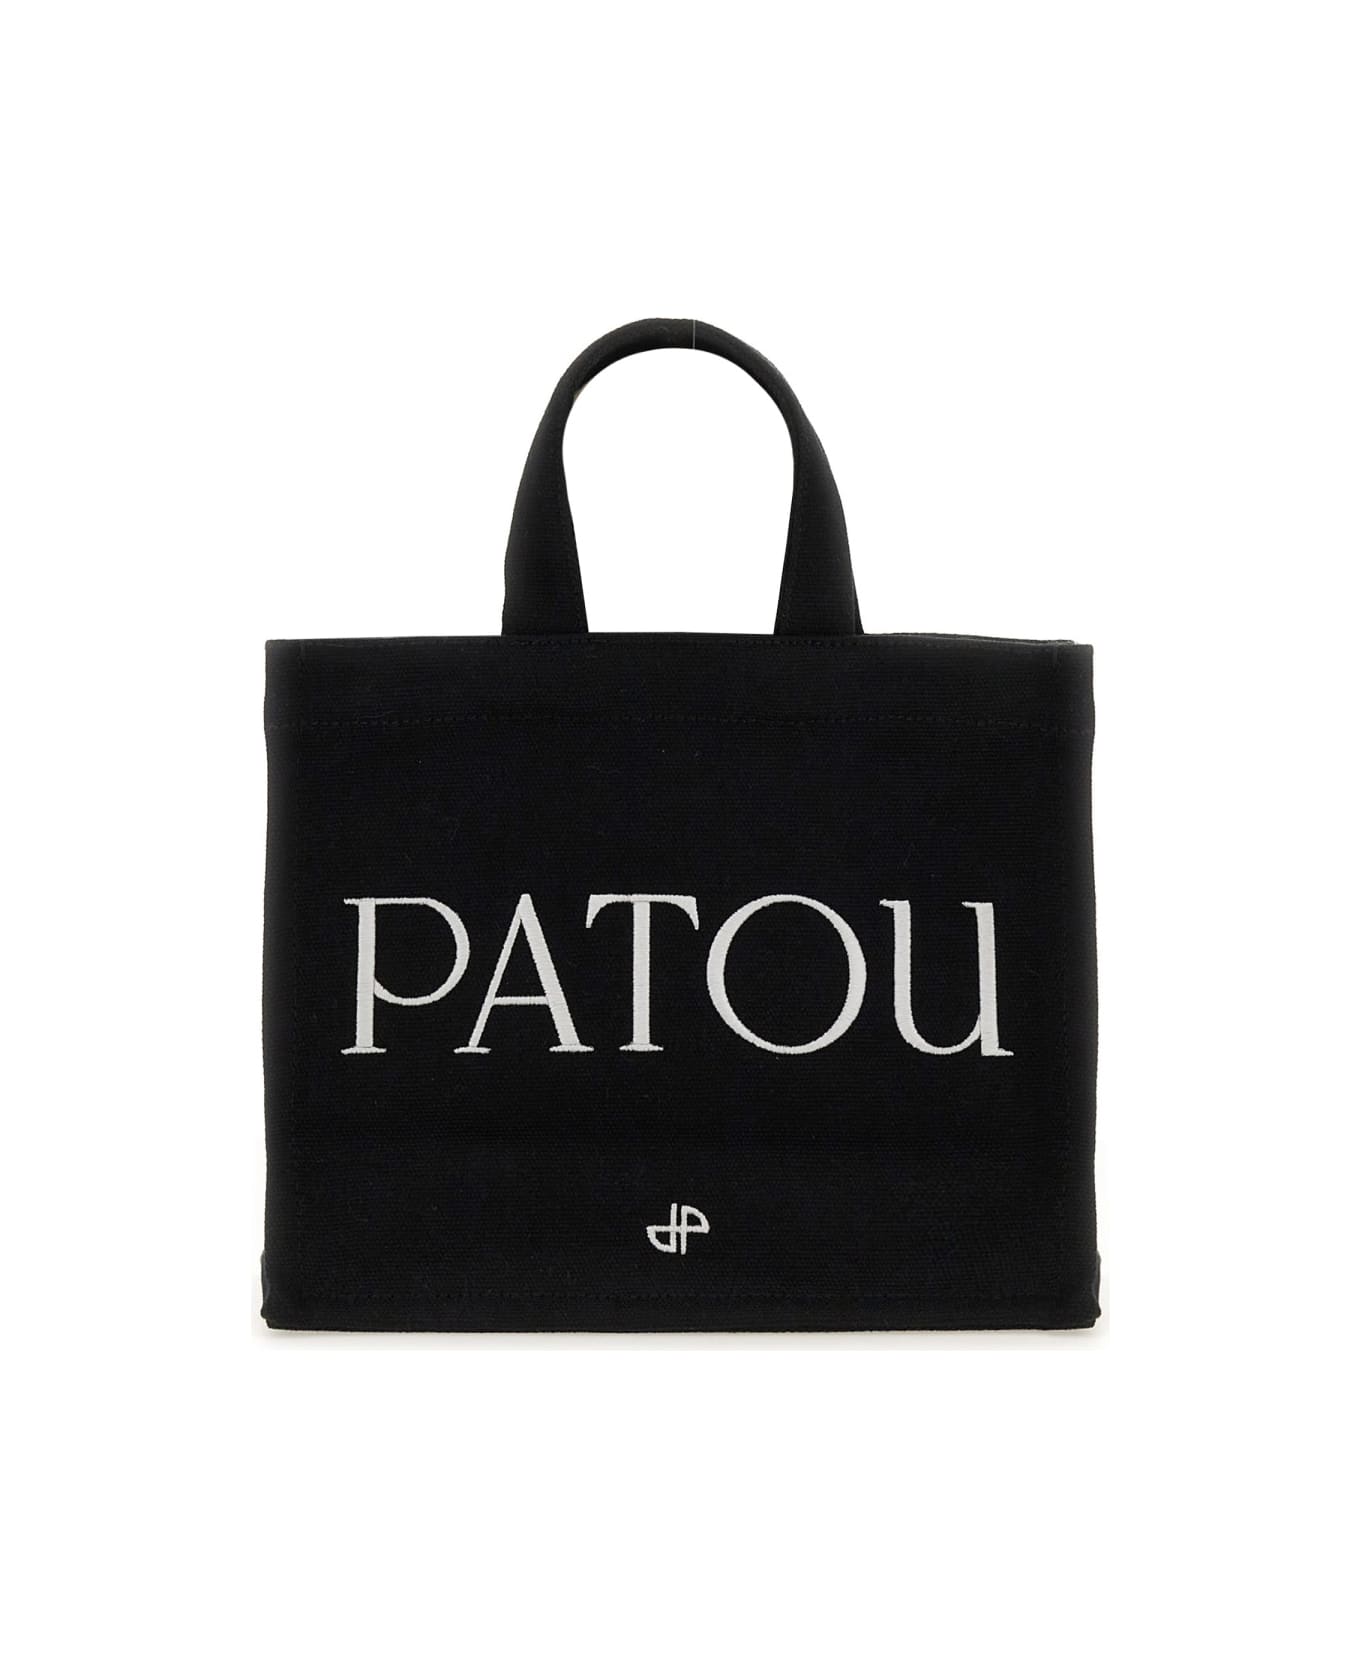 Patou Small 'patou' Tote Bag - BLACK